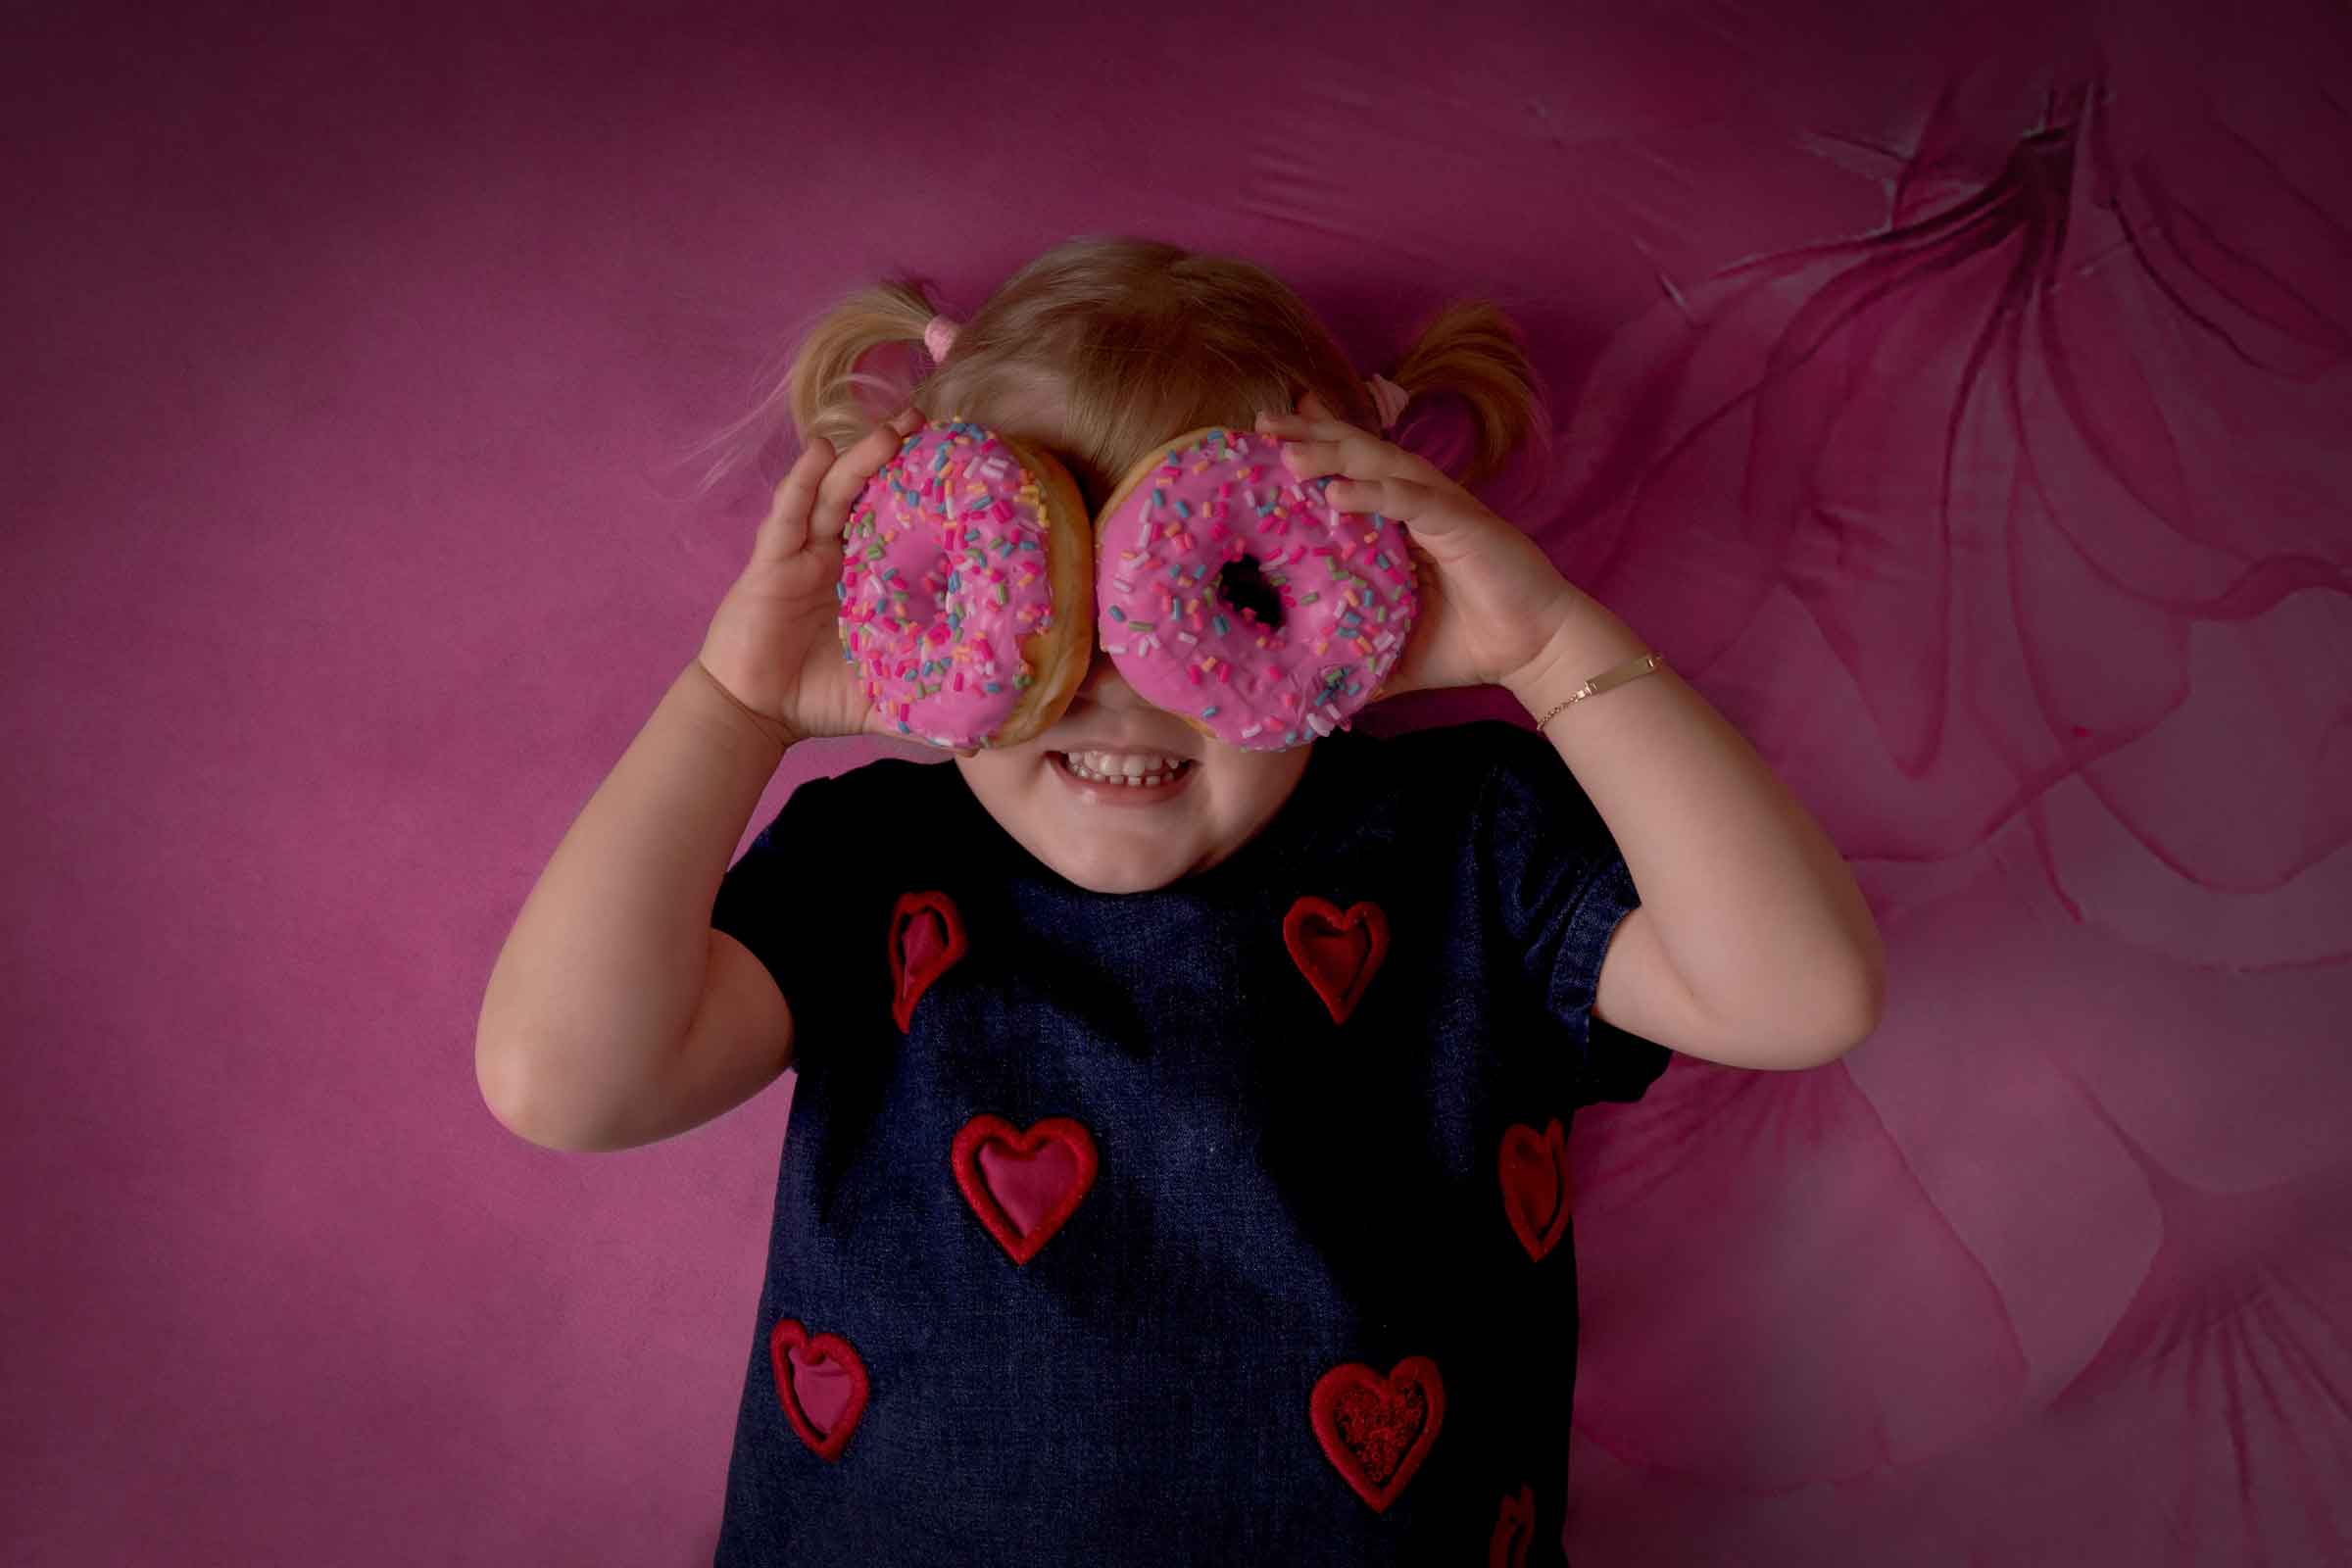 Mirkaphotography hat Blondes Mädchen im roser Hintergrund mit zwei donuts vor den Augen Fotografiert